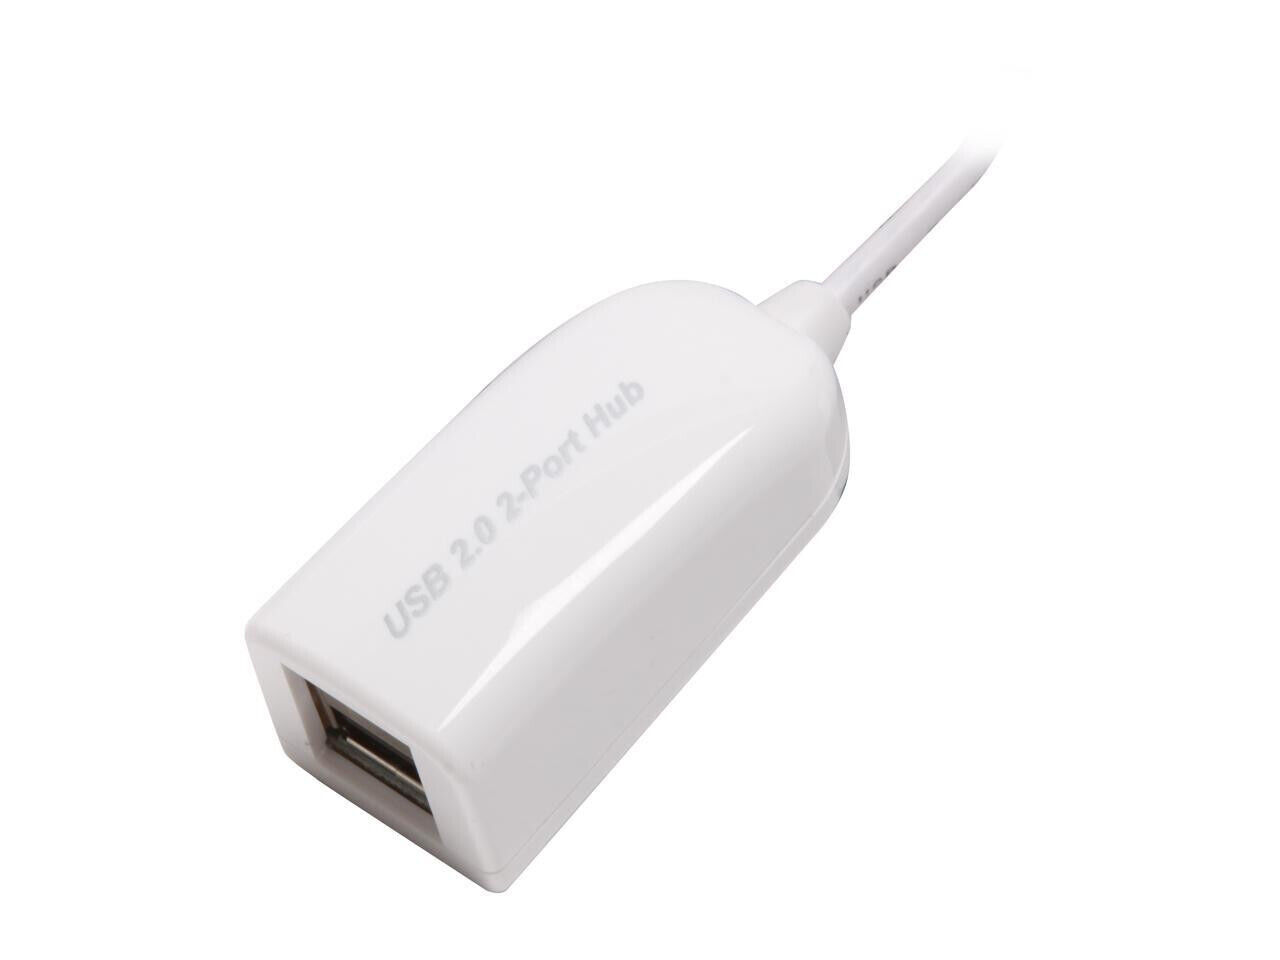 Plugable 2-Port USB 2.0 Hub/Splitter (USB2-2PORT)